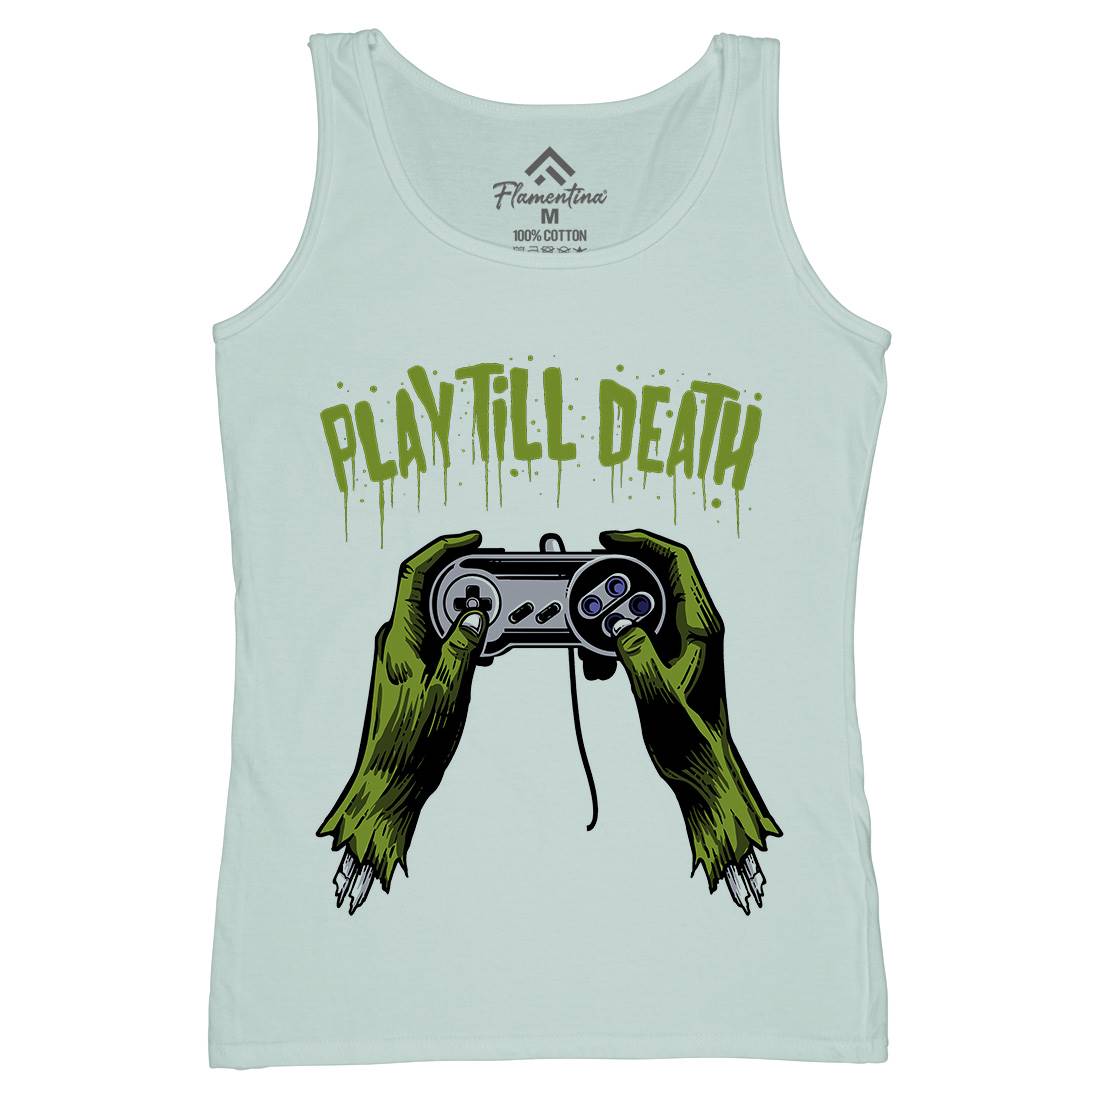 Play Till Death Womens Organic Tank Top Vest Geek A561